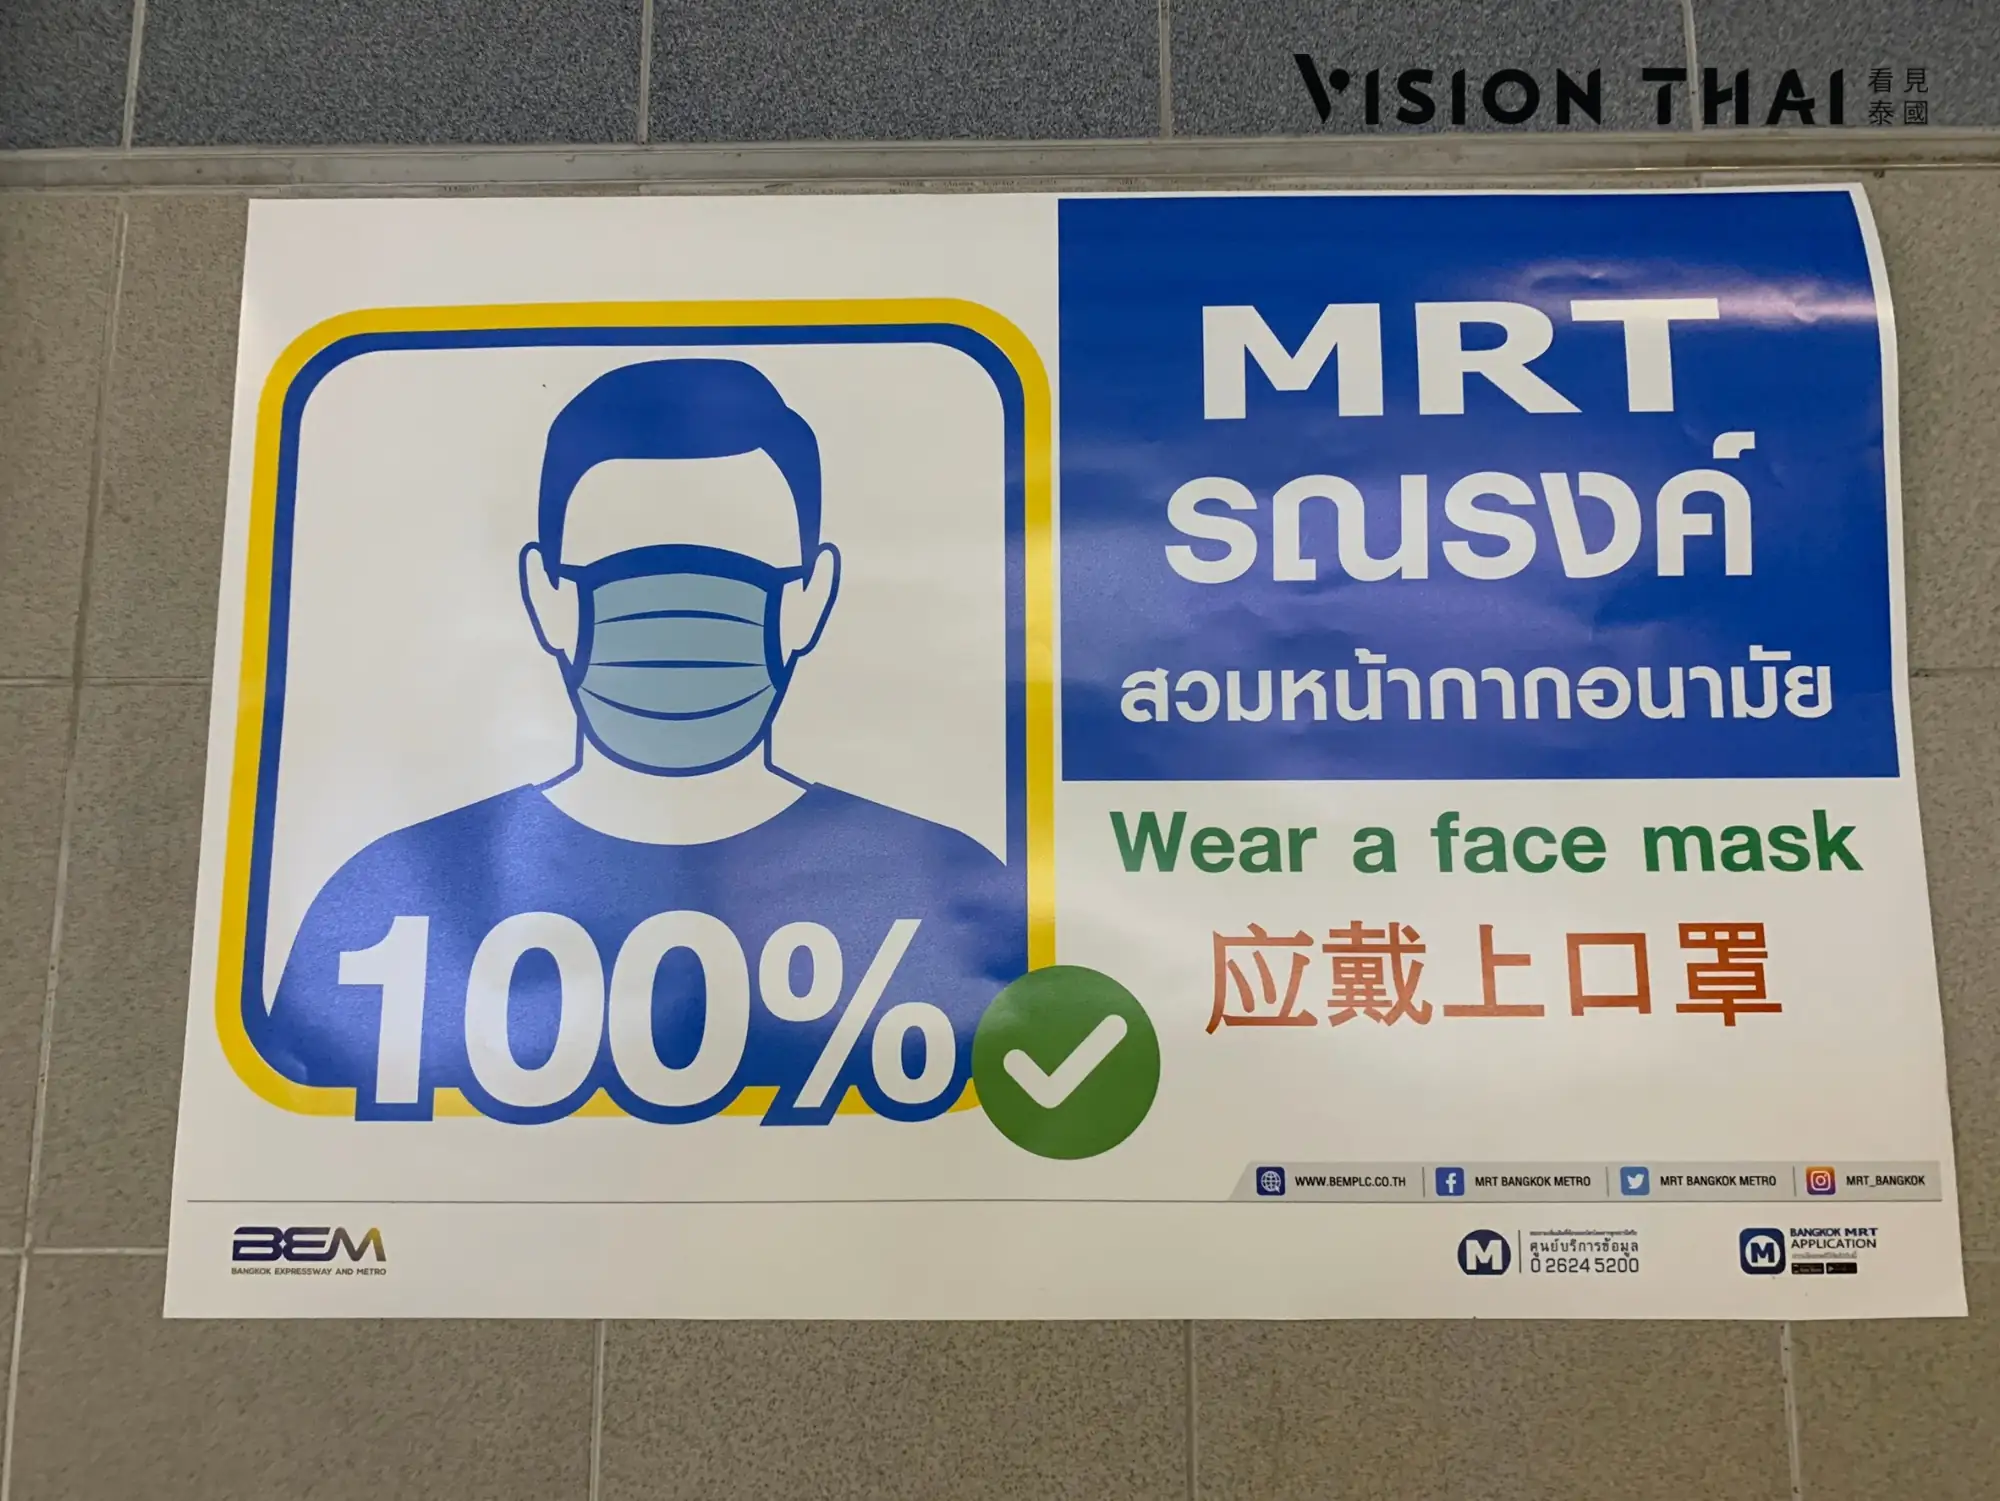 曼谷地鐵MRT規定乘客戴口罩